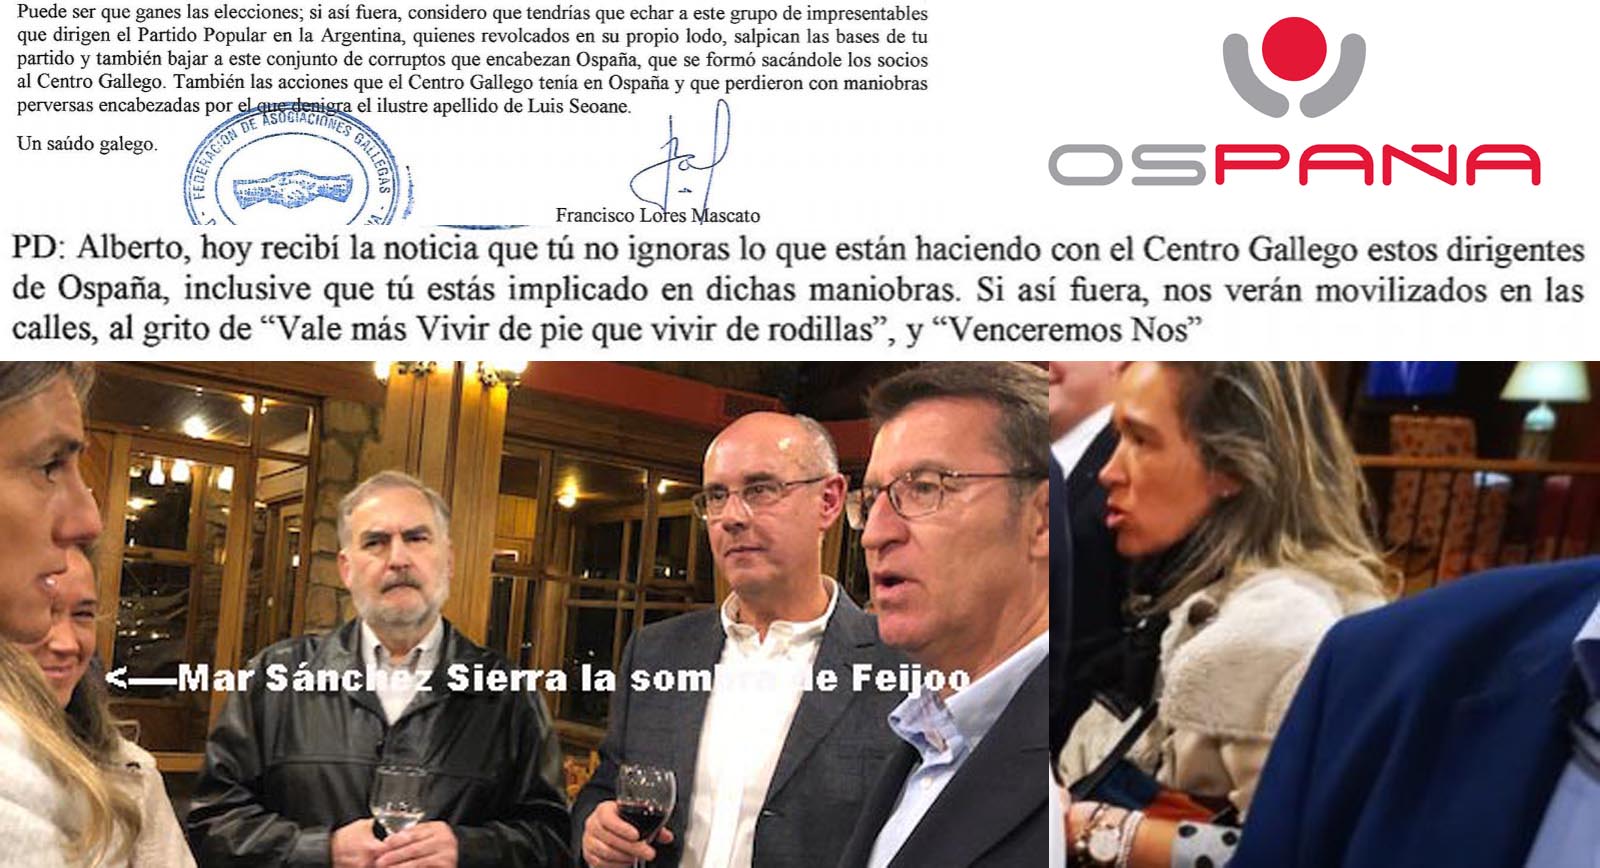 Exclusiva; Feijóo se presenta en Uruguay para avalar un negocio privado  piramidal con la salud privatizando parcelas 4 meses antes de presentar la  quiebra del hospital de la Casa de Galicia. -